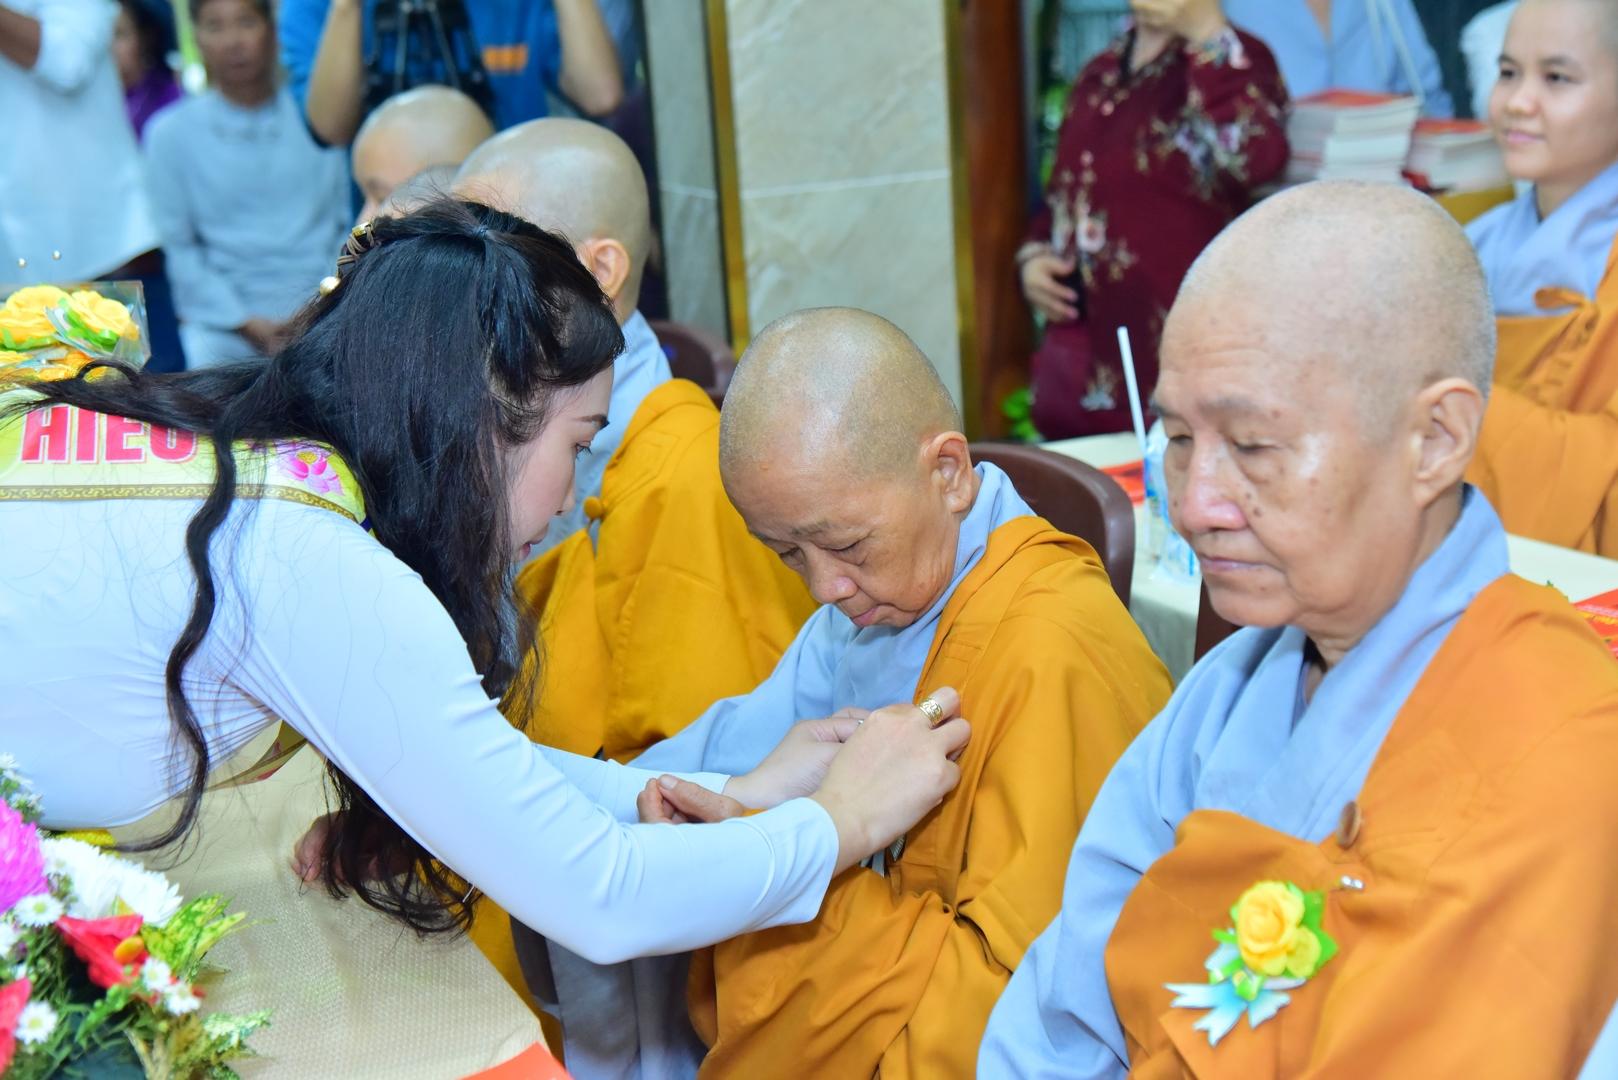 Chuỗi hoạt động Đại lễ Vu lan và Chợ yêu thương 0 đồng tại Tu viện Long Hưng (Bình Tân, TP.HCM)